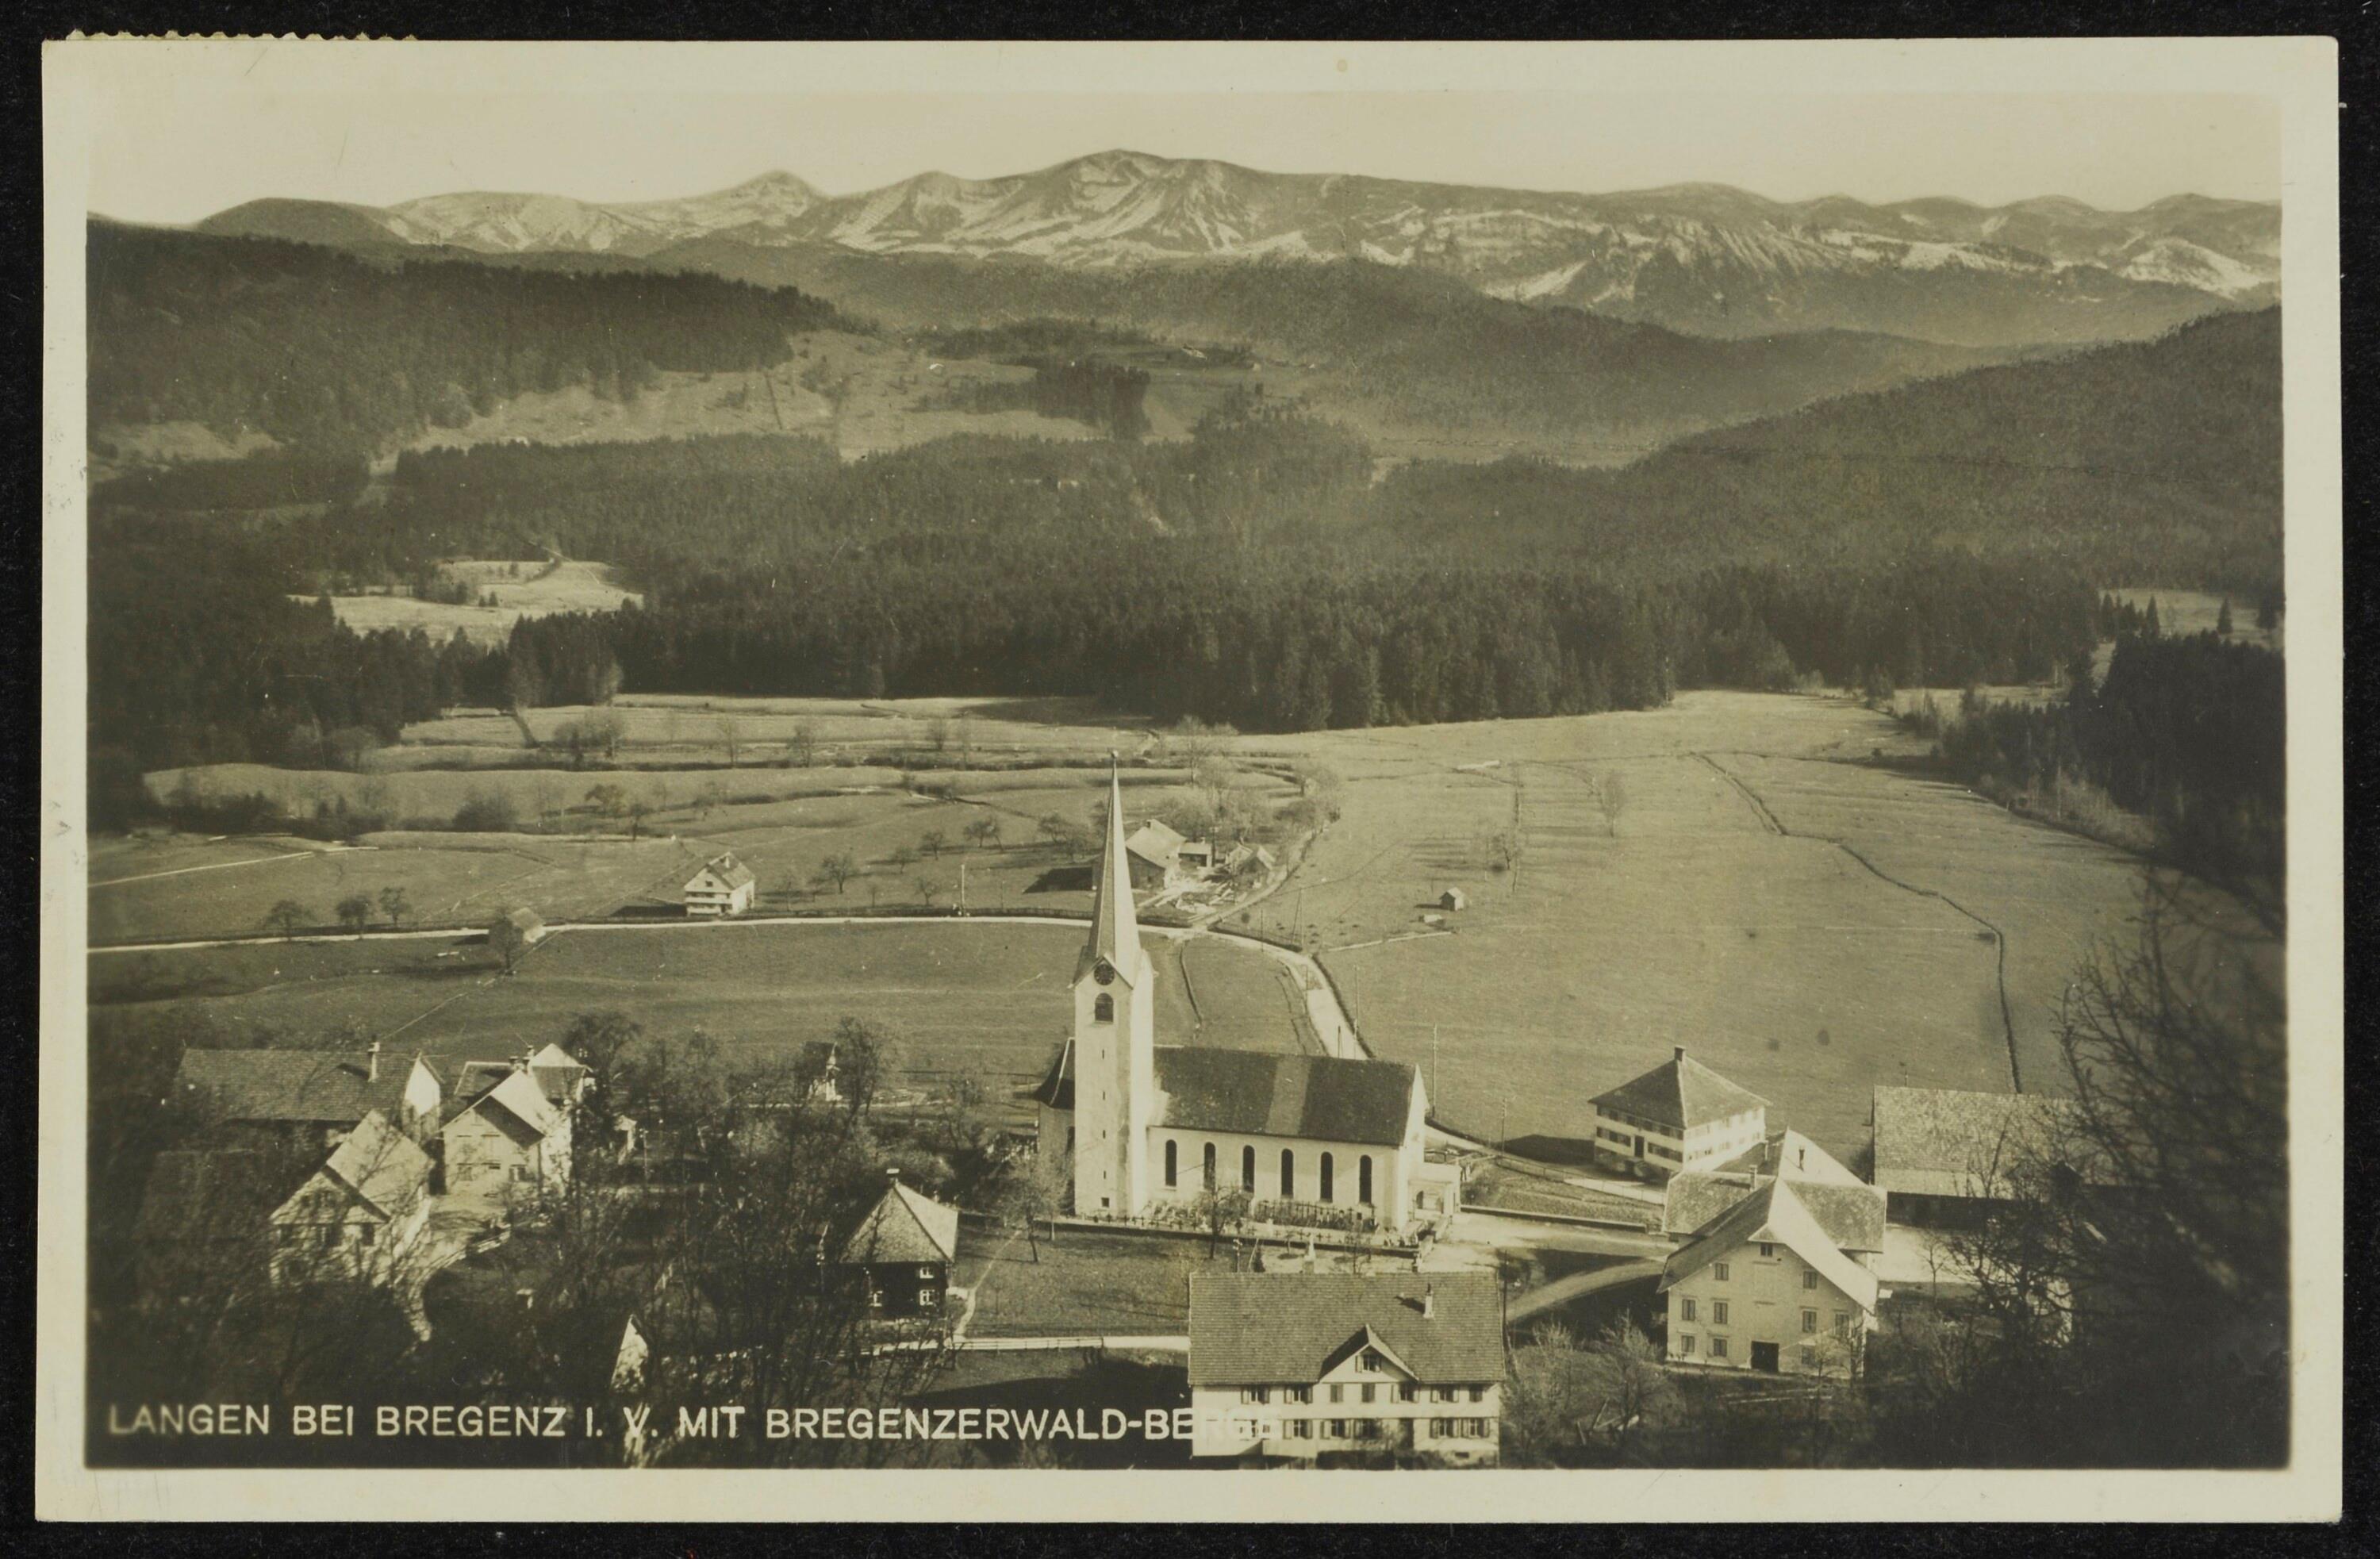 Langen bei Bregenz i. V. mit Bregenzerwald-Berge></div>


    <hr>
    <div class=